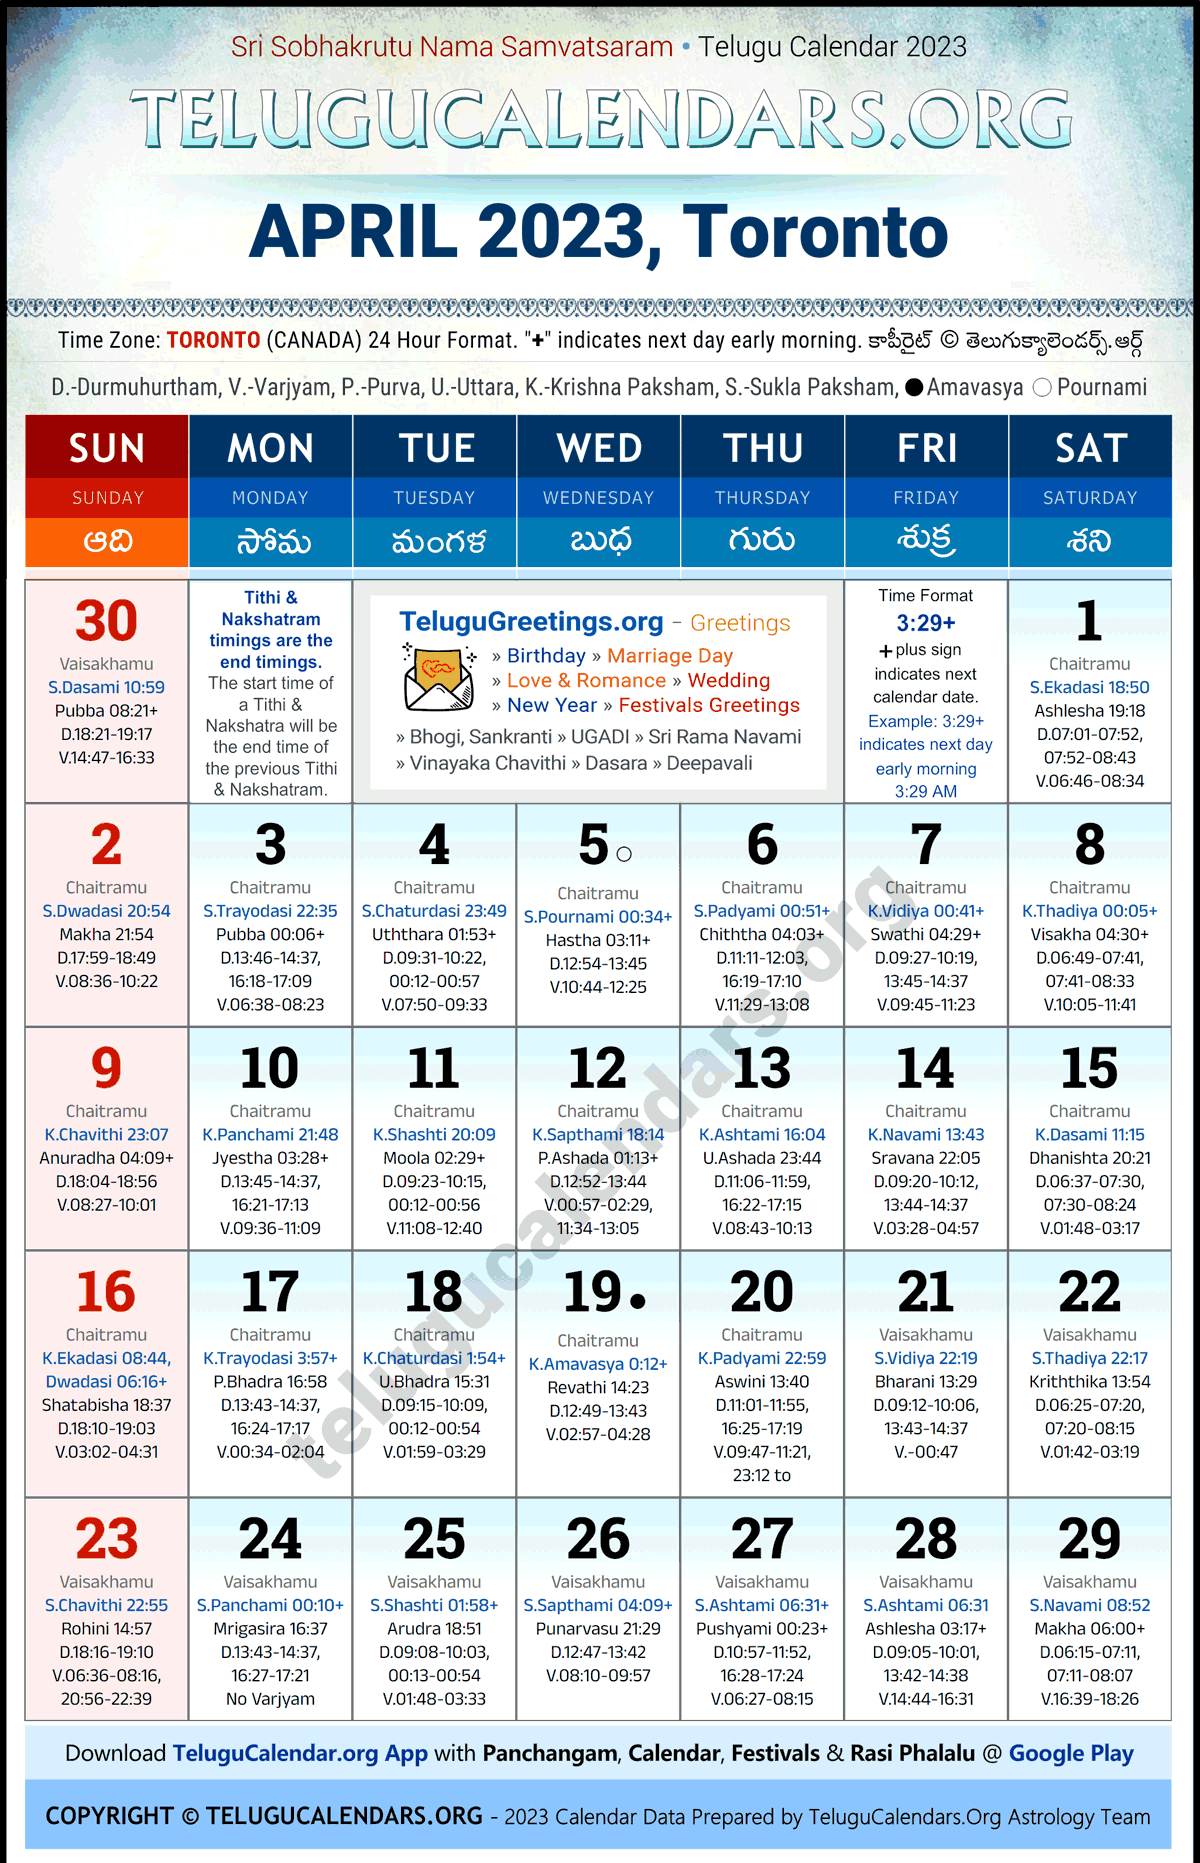 Telugu Calendar 2023 April Festivals for Toronto